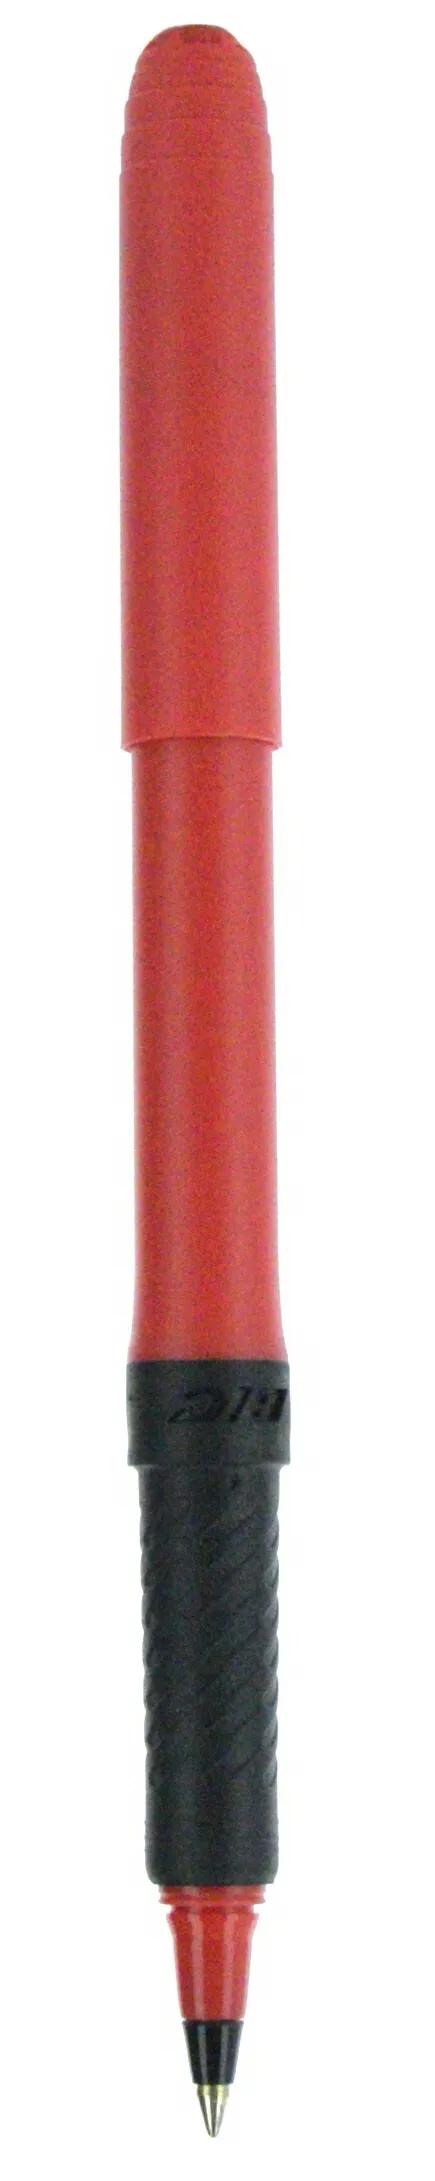 BIC® Grip Roller Pen 89 of 147